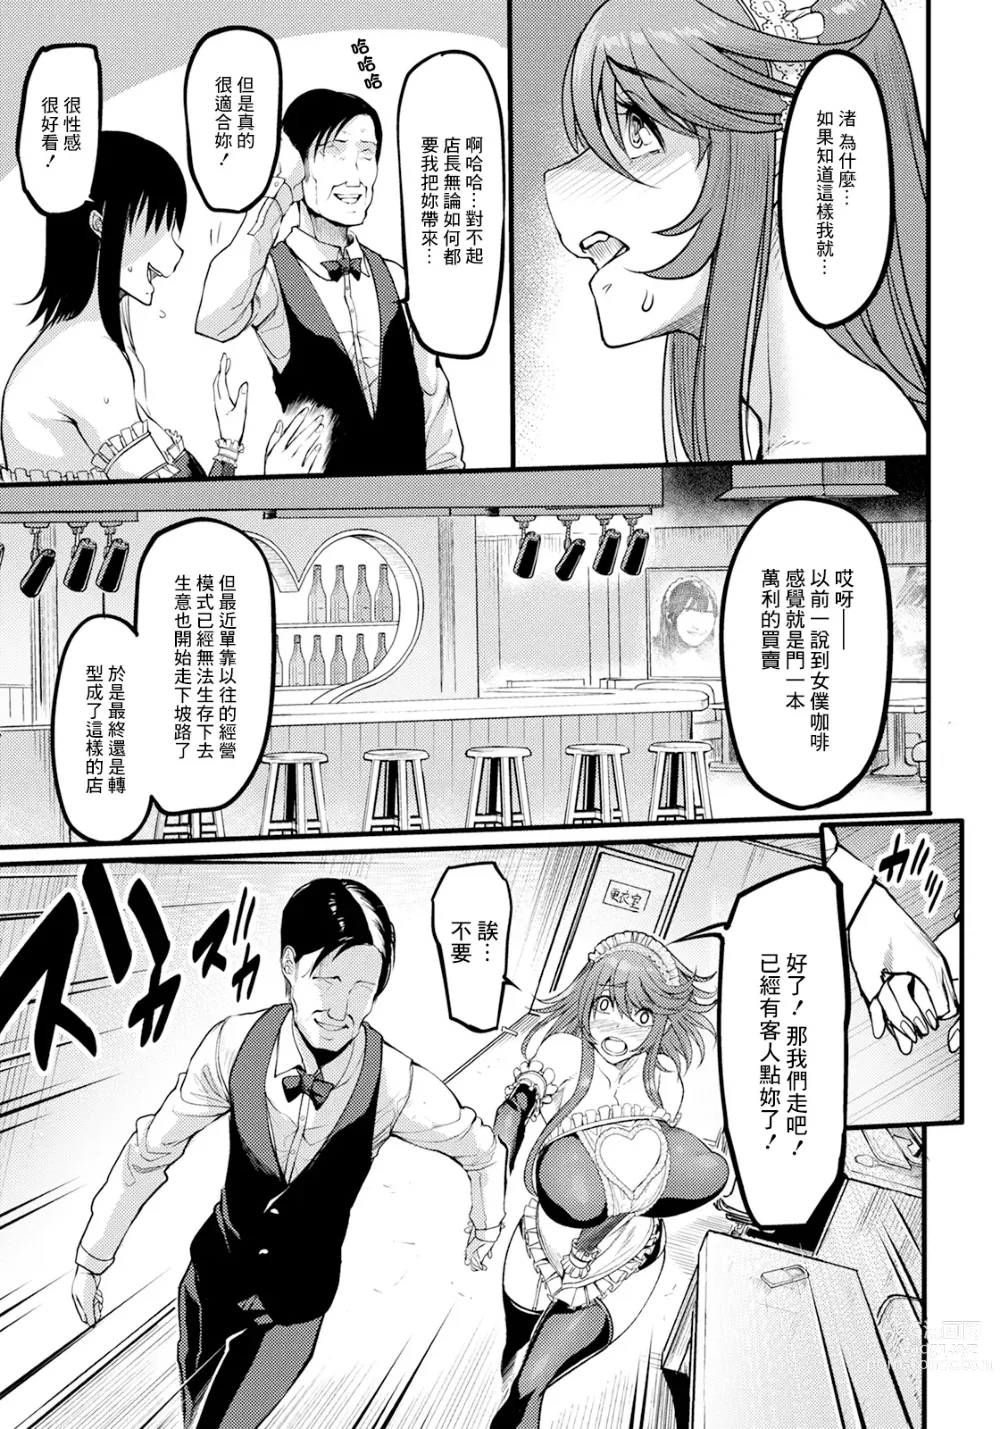 Page 5 of manga Uwa Kitsu Maid Cafe ~Hitozuma Kanjokuten~